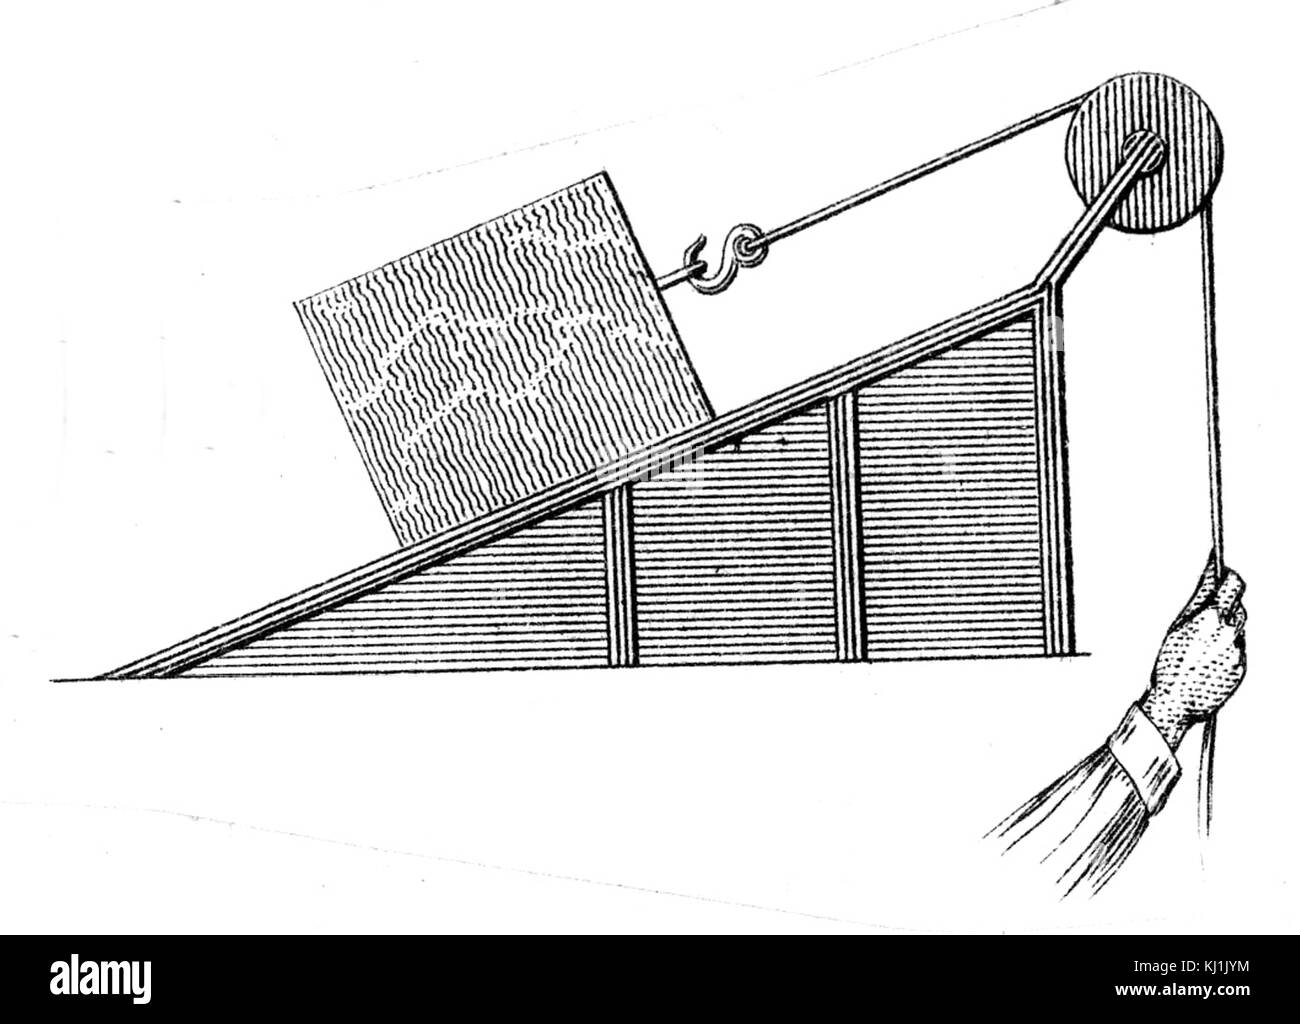 Grabado representando diversas aplicaciones del plano inclinado. Fecha del  siglo XIX Fotografía de stock - Alamy